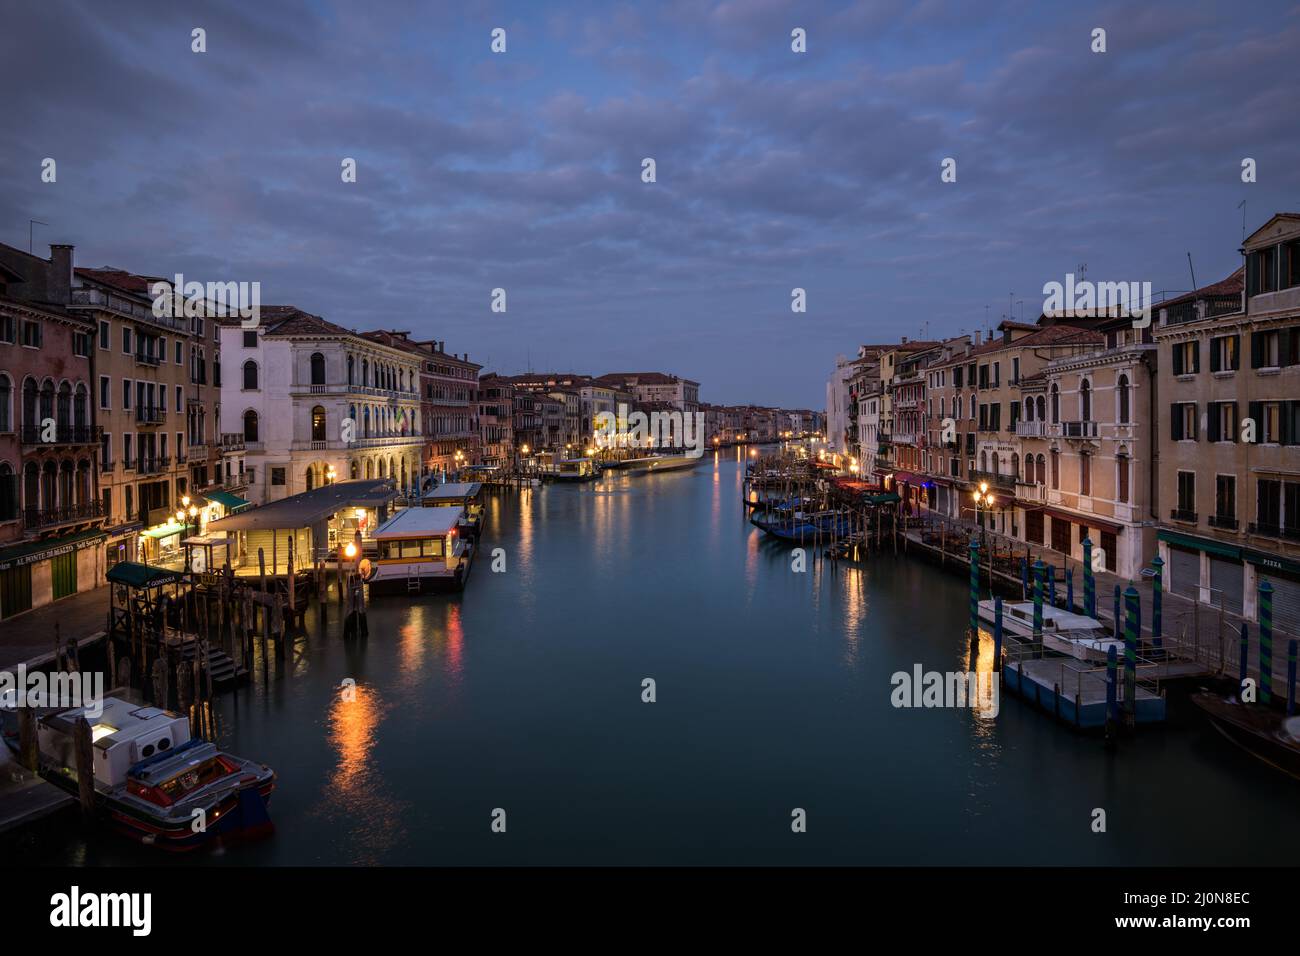 Sunrise view from Ponte di Rialto, Venice, Italy Stock Photo